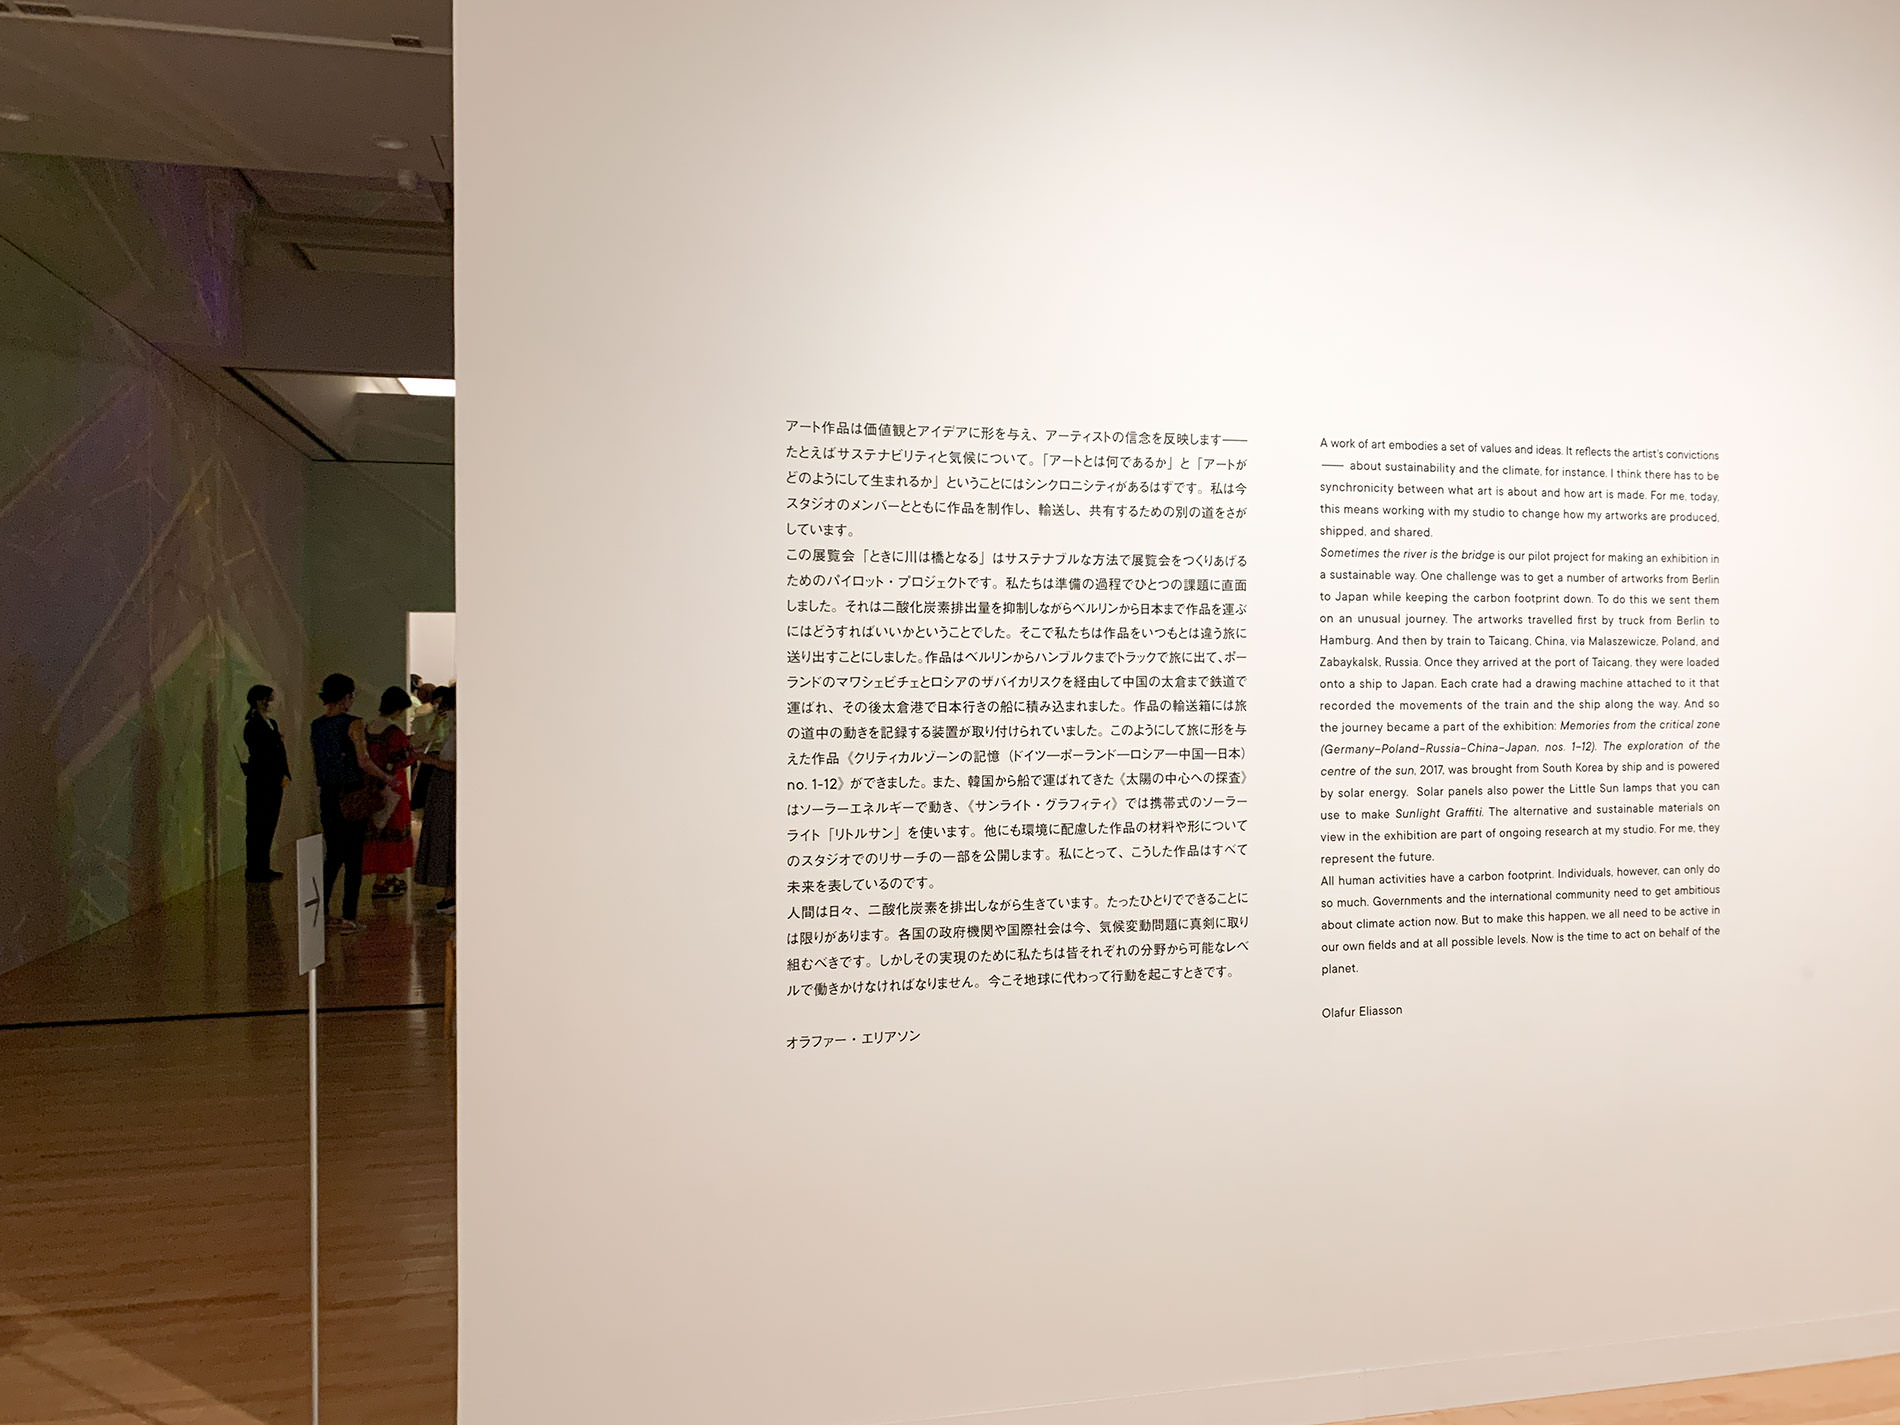 オラファー・エリアソン 「ときに川は橋となる」展 | 東京都現代美術館 / Olafur Eliasson | MUSEUM OF CONTEMPORARY ART TOKYO 2020